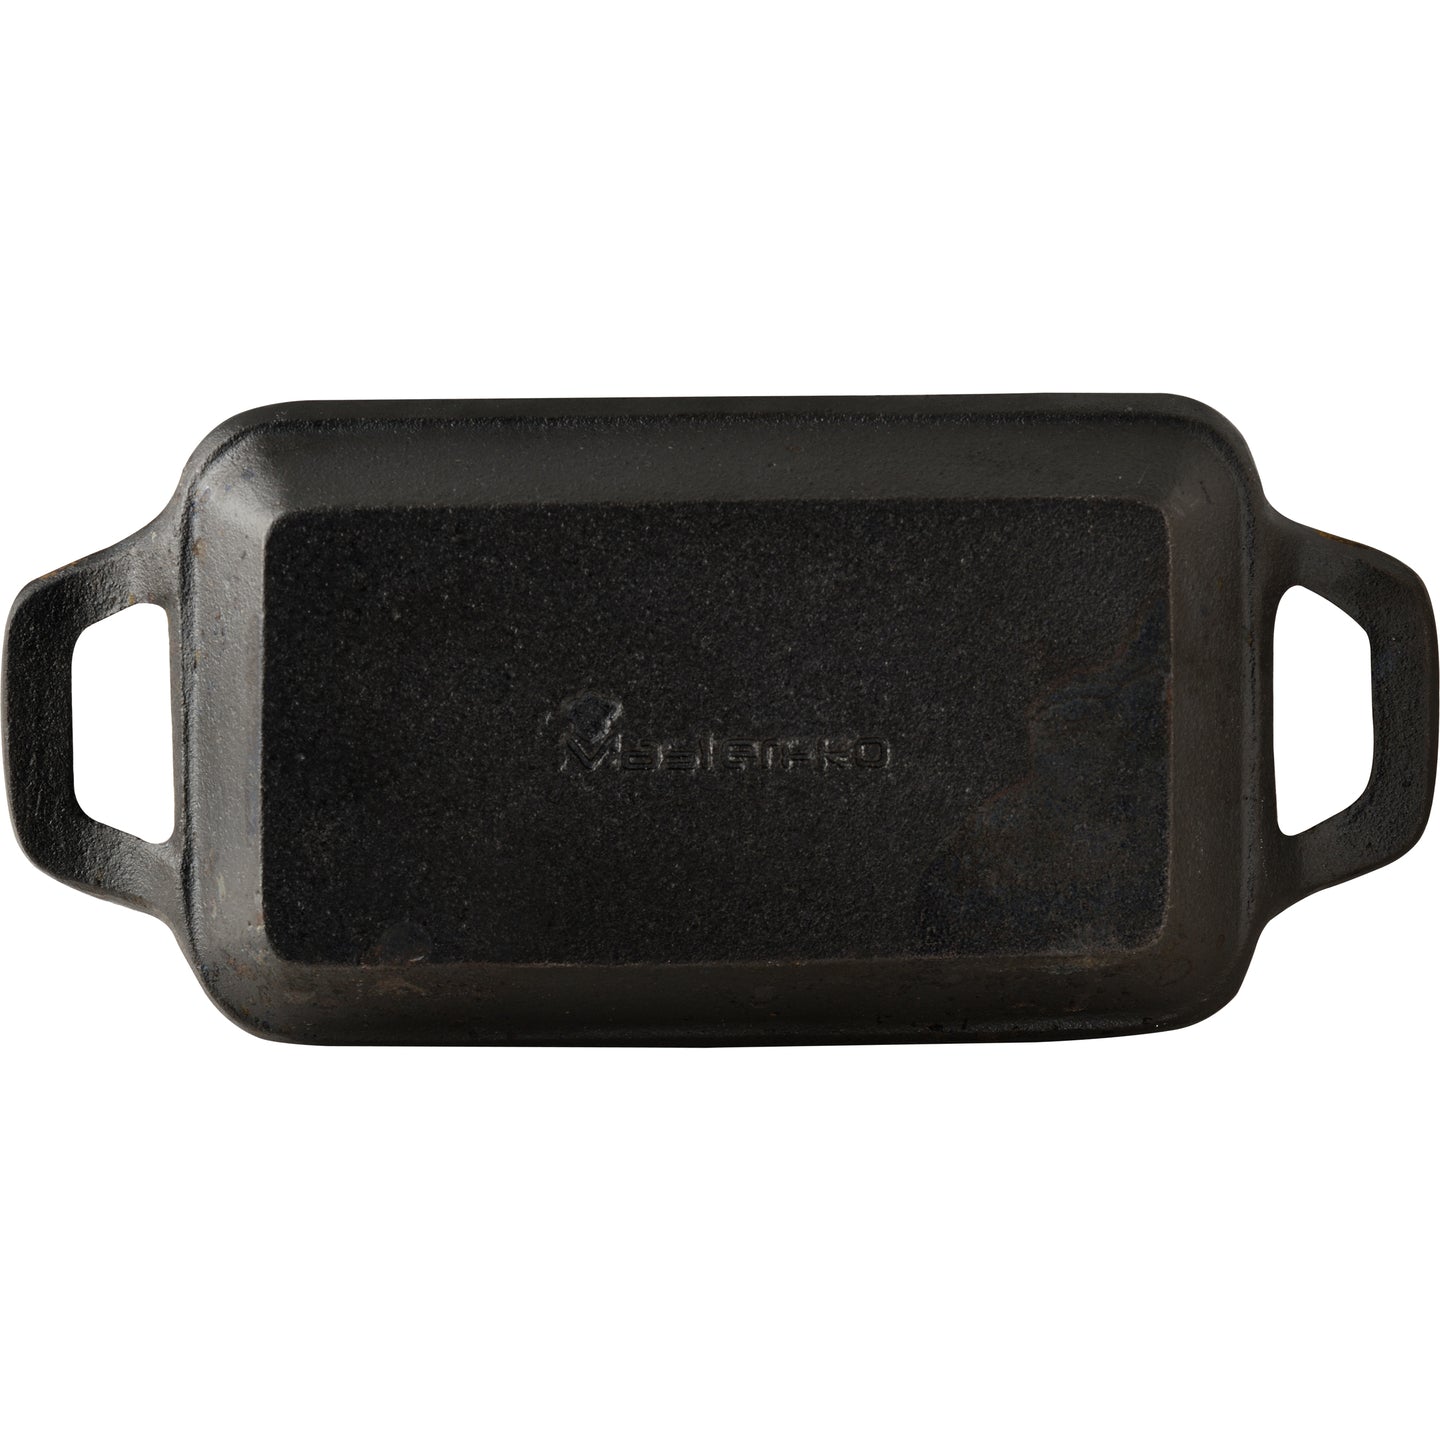 Sartén mini rectangular de hierro fundido con base - Cook & Share (4)